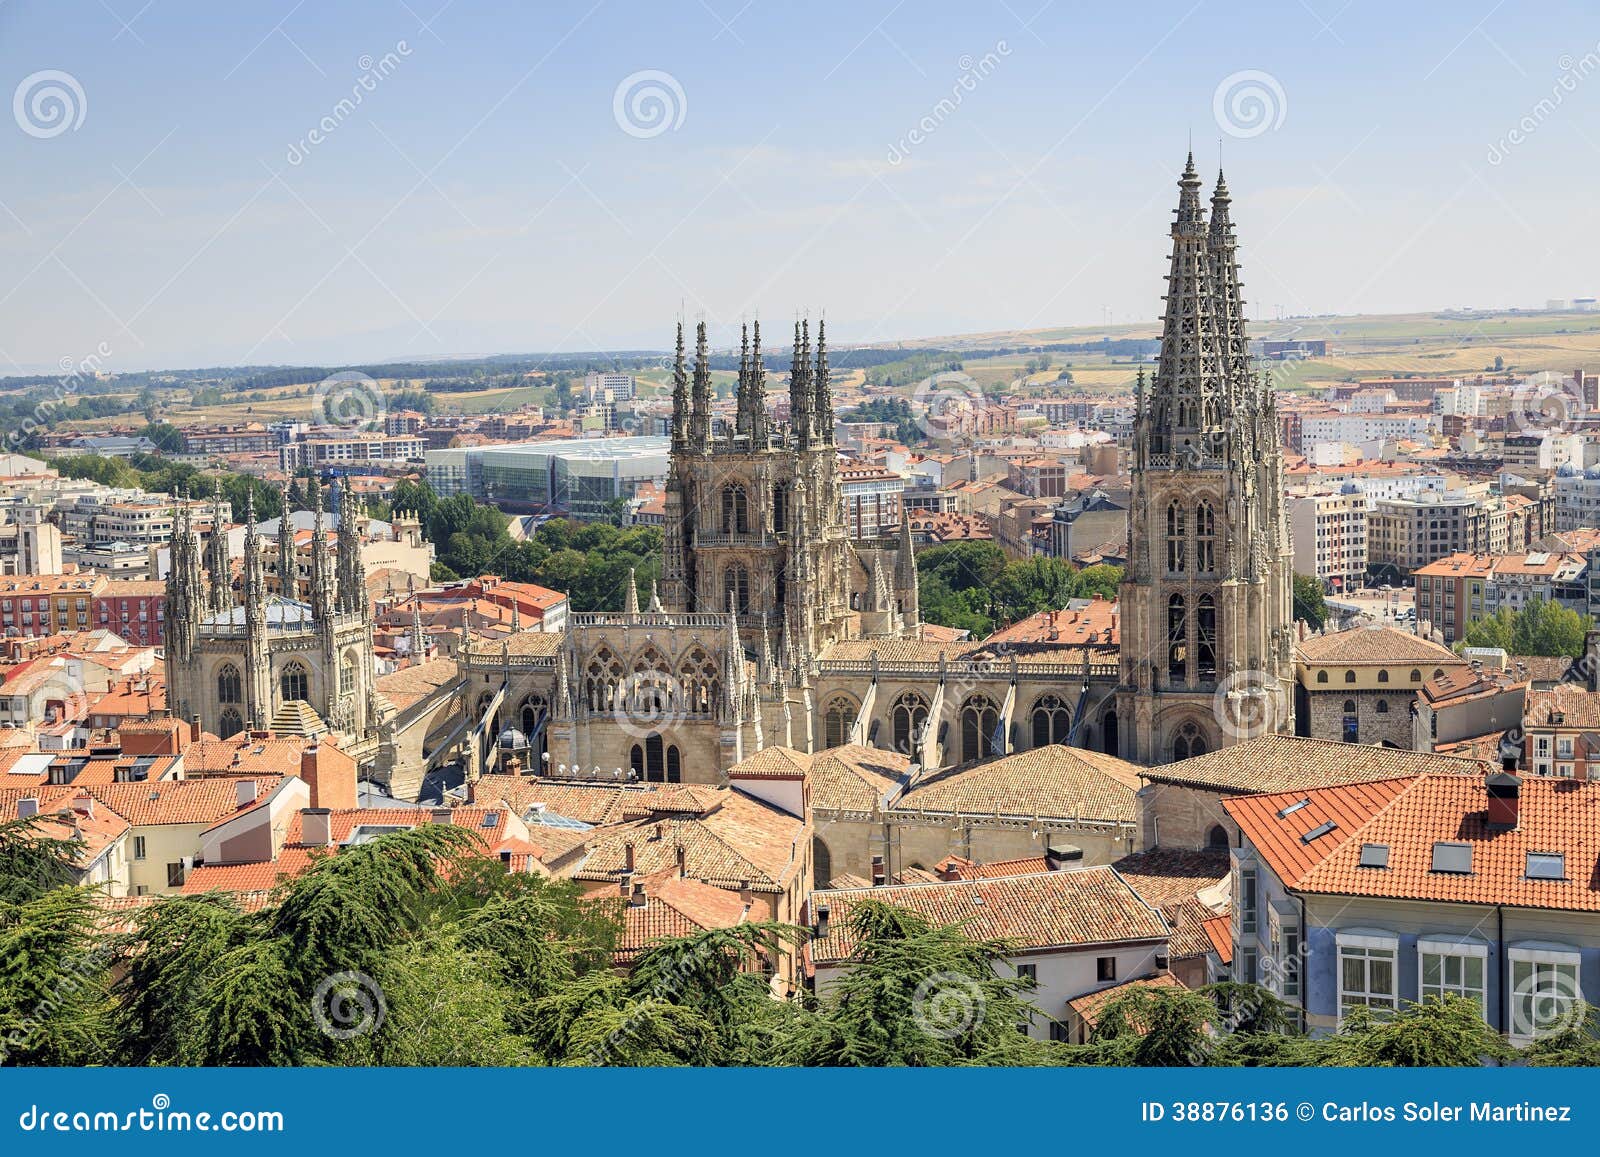 Le Tour du Monde en vélo d'hervé GESTAS: Espagne : Burgos